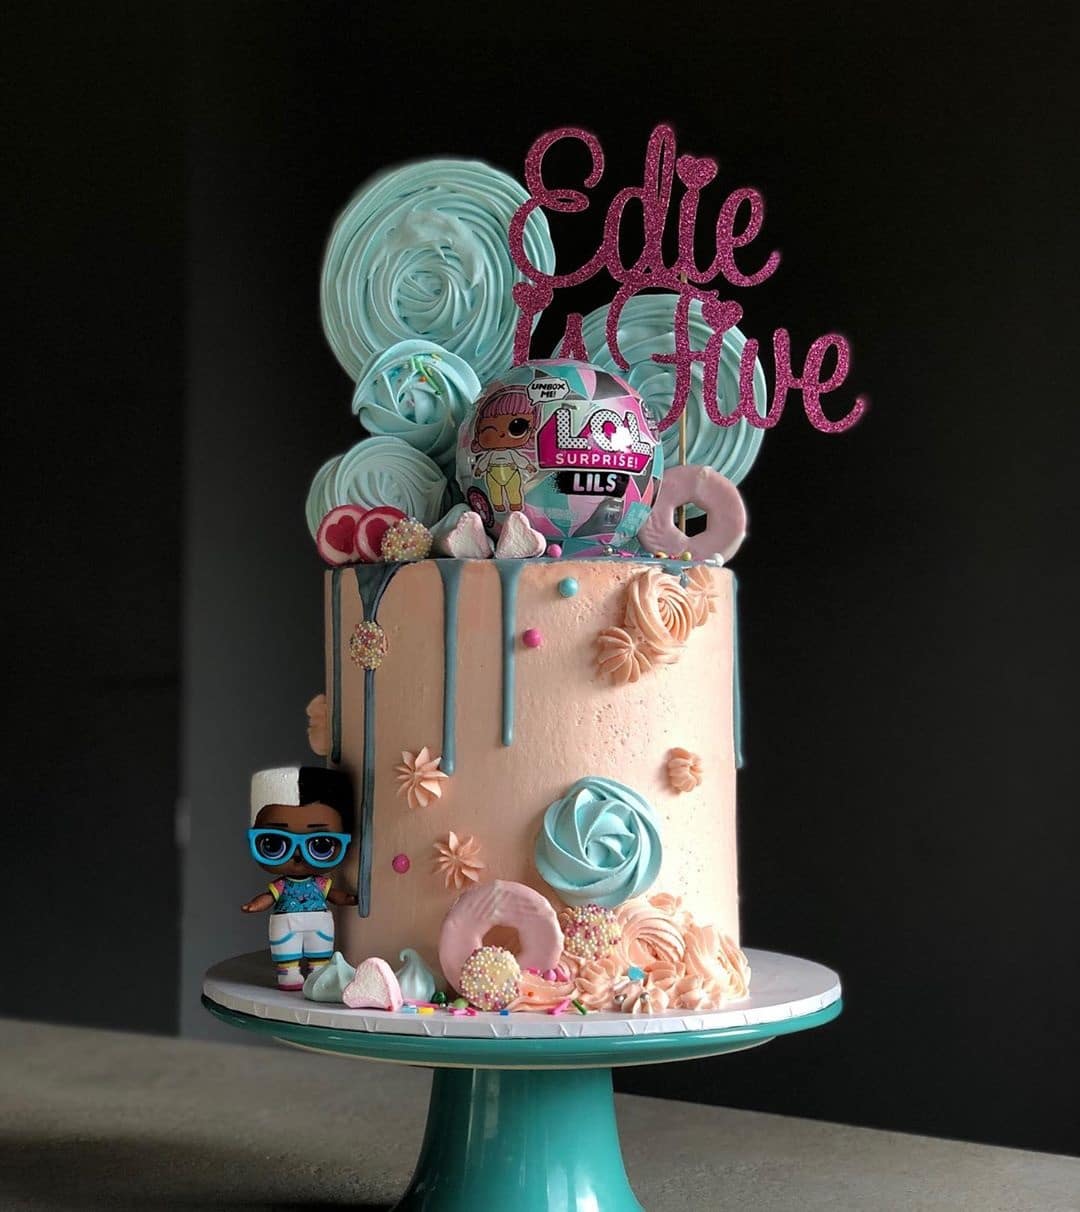 13 Cute LOL Dolls Cake Ideas (Gotta Have That Perfect Birthday!)